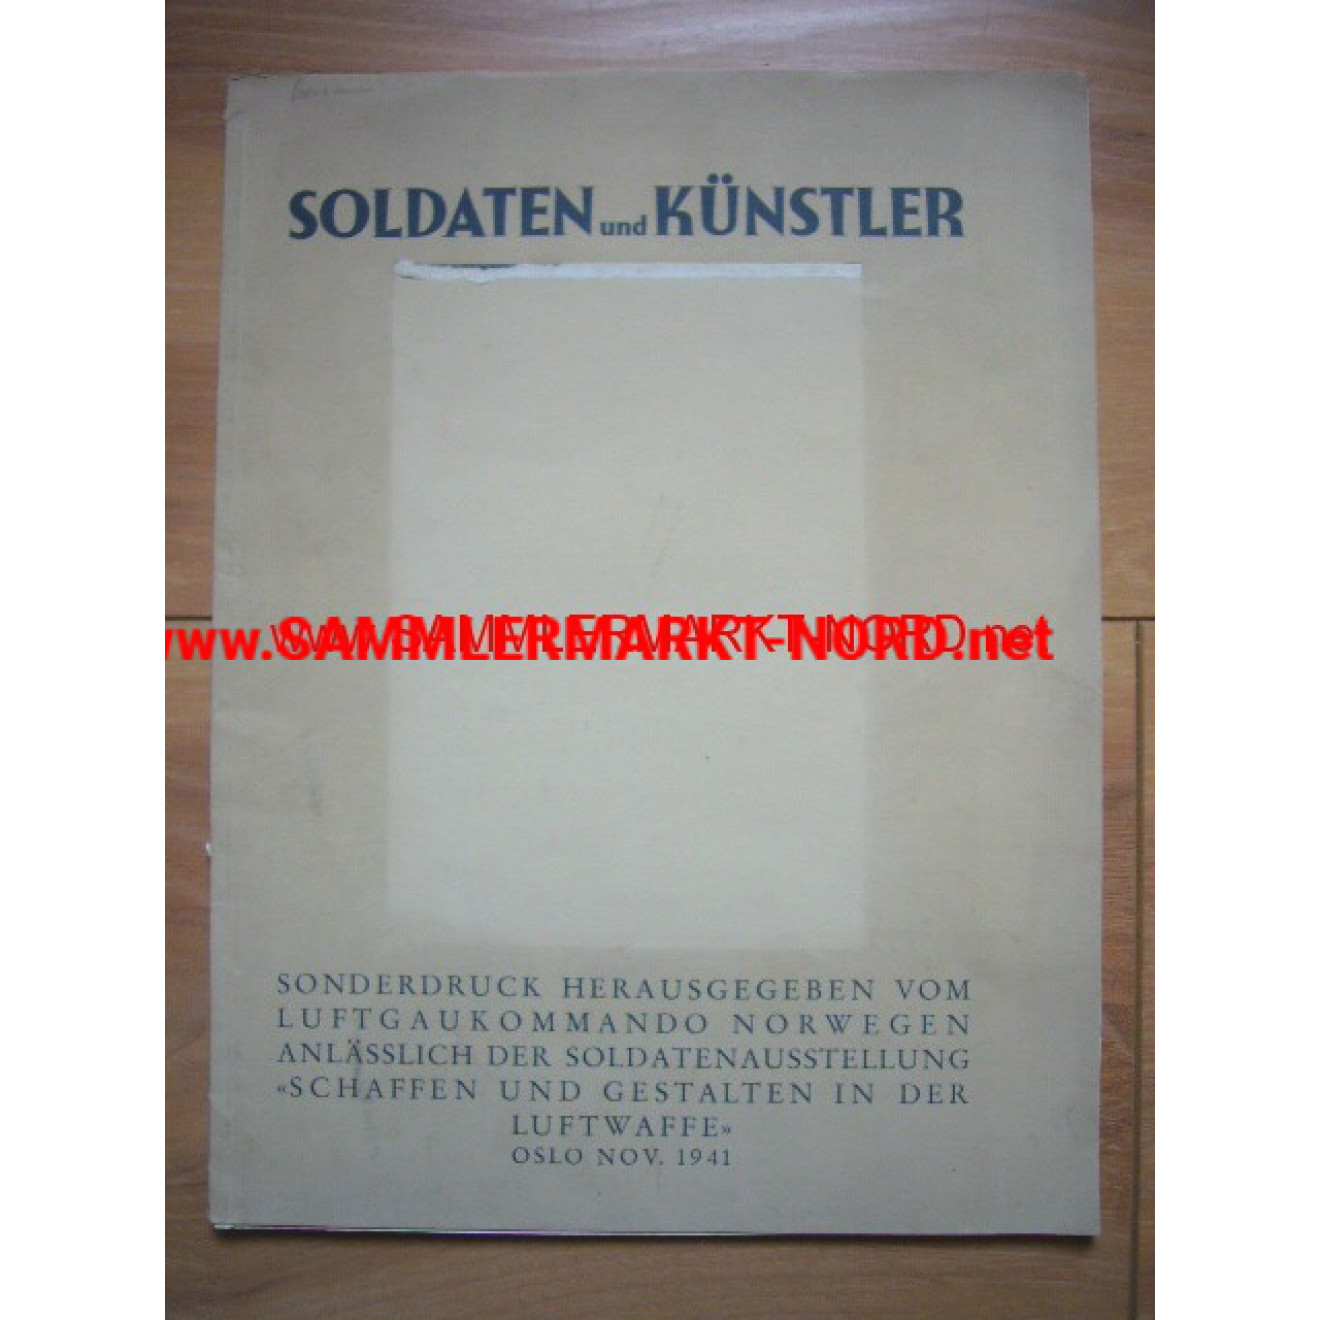 Soldaten und Künstler (Luftgaukommando Norwegen 1941)